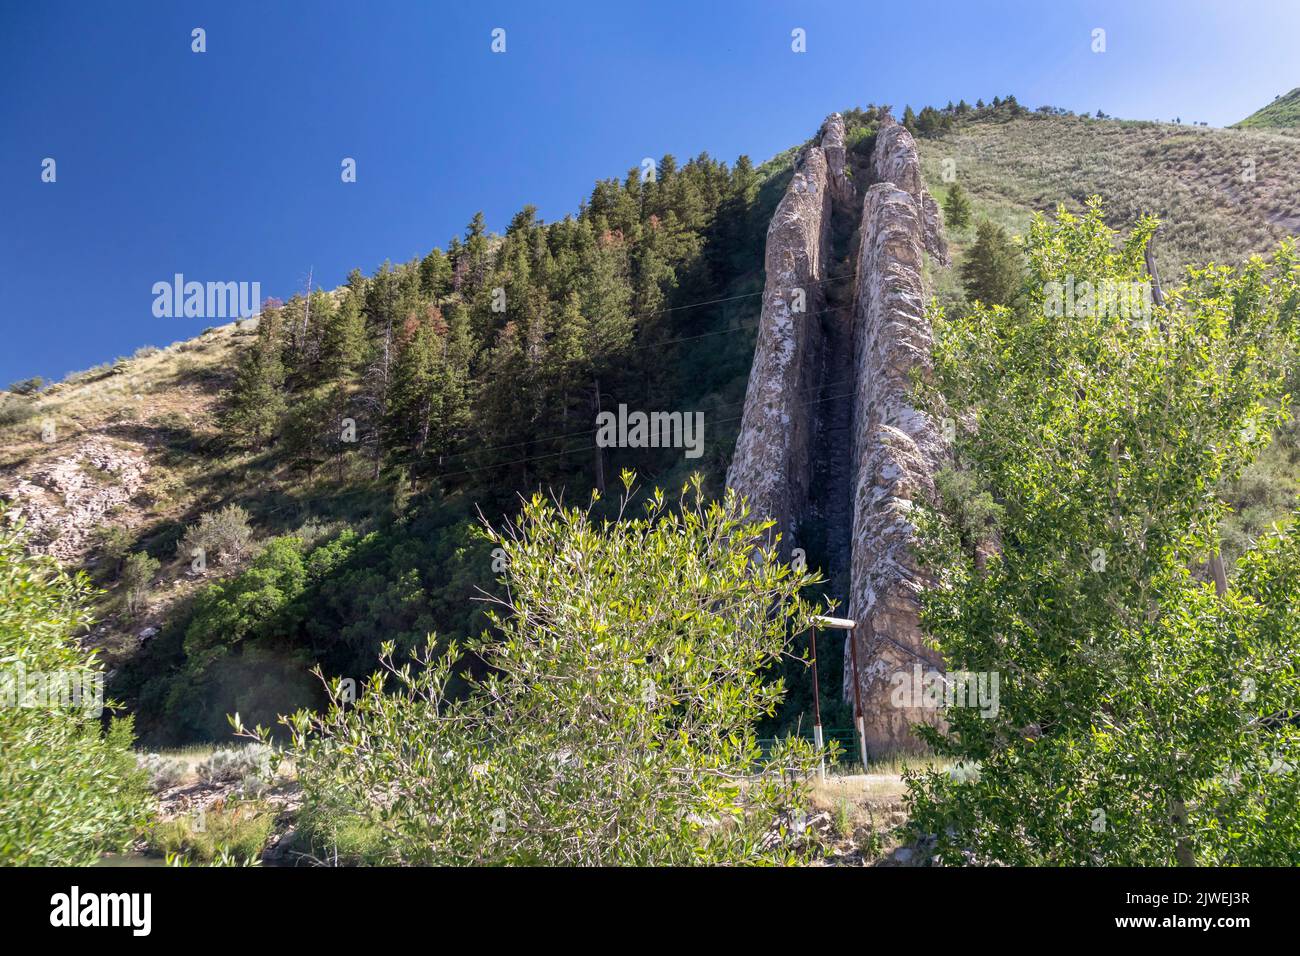 Croydon, Utah, el Deslizamiento del Diablo, una formación geológica que consiste en dos losas paralelas de piedra caliza que corren cientos de pies por el lado de una colina Foto de stock